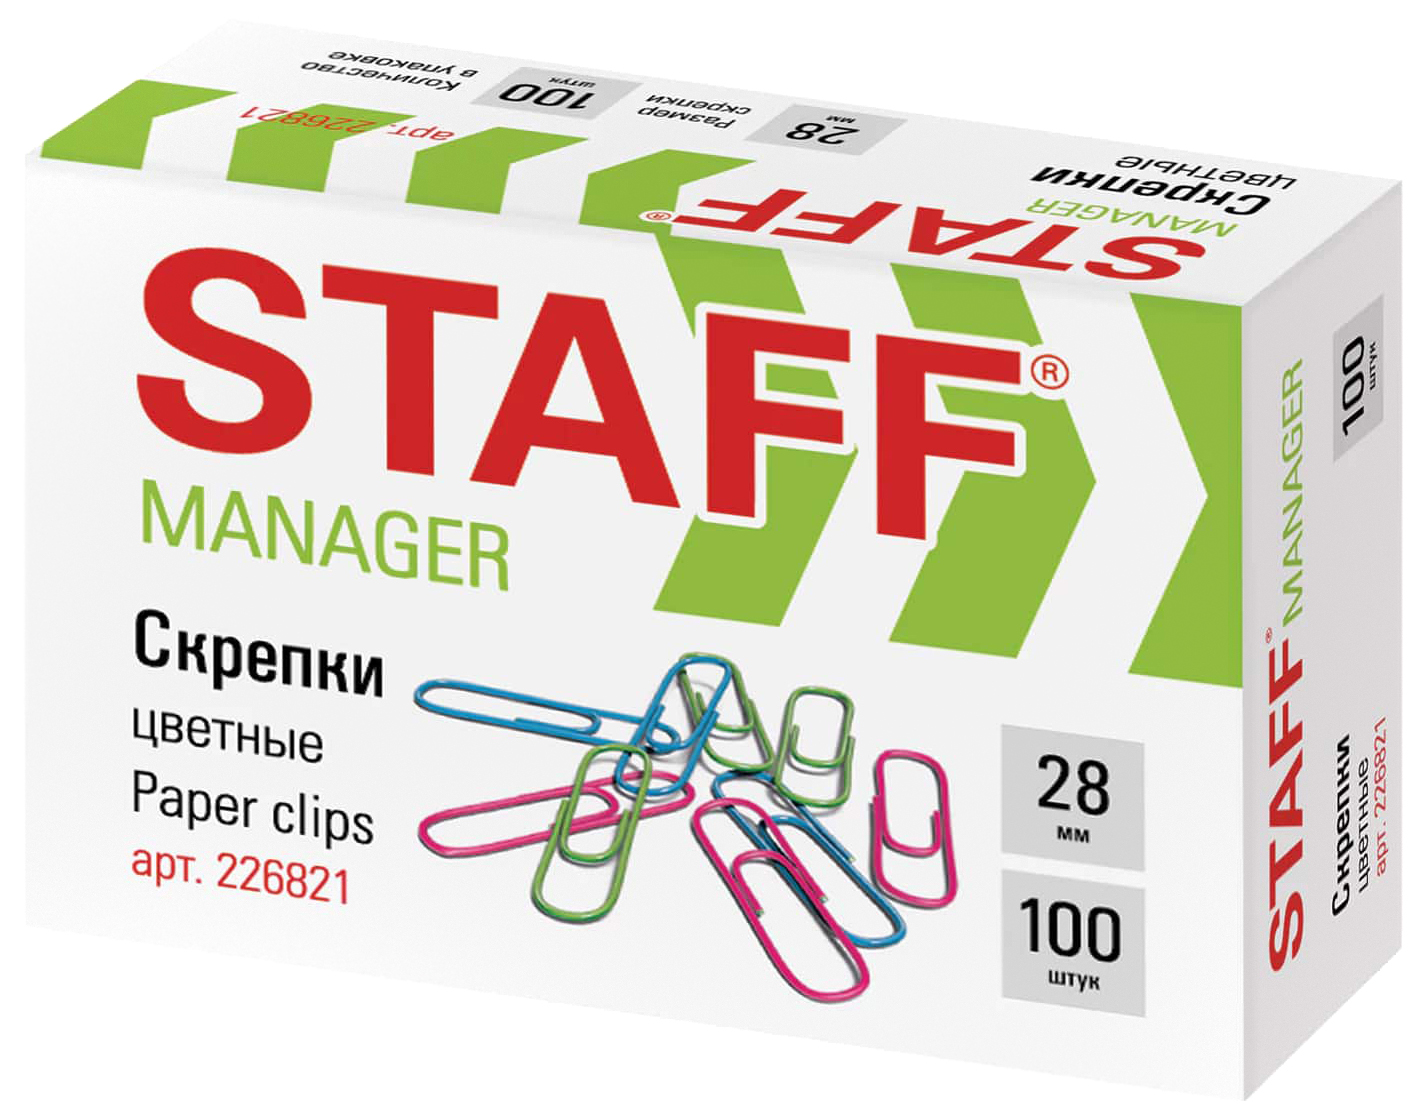 Скрепки STAFF Manager, 28 мм, цветные, 100 шт в картонной коробке, 226821 5 штук